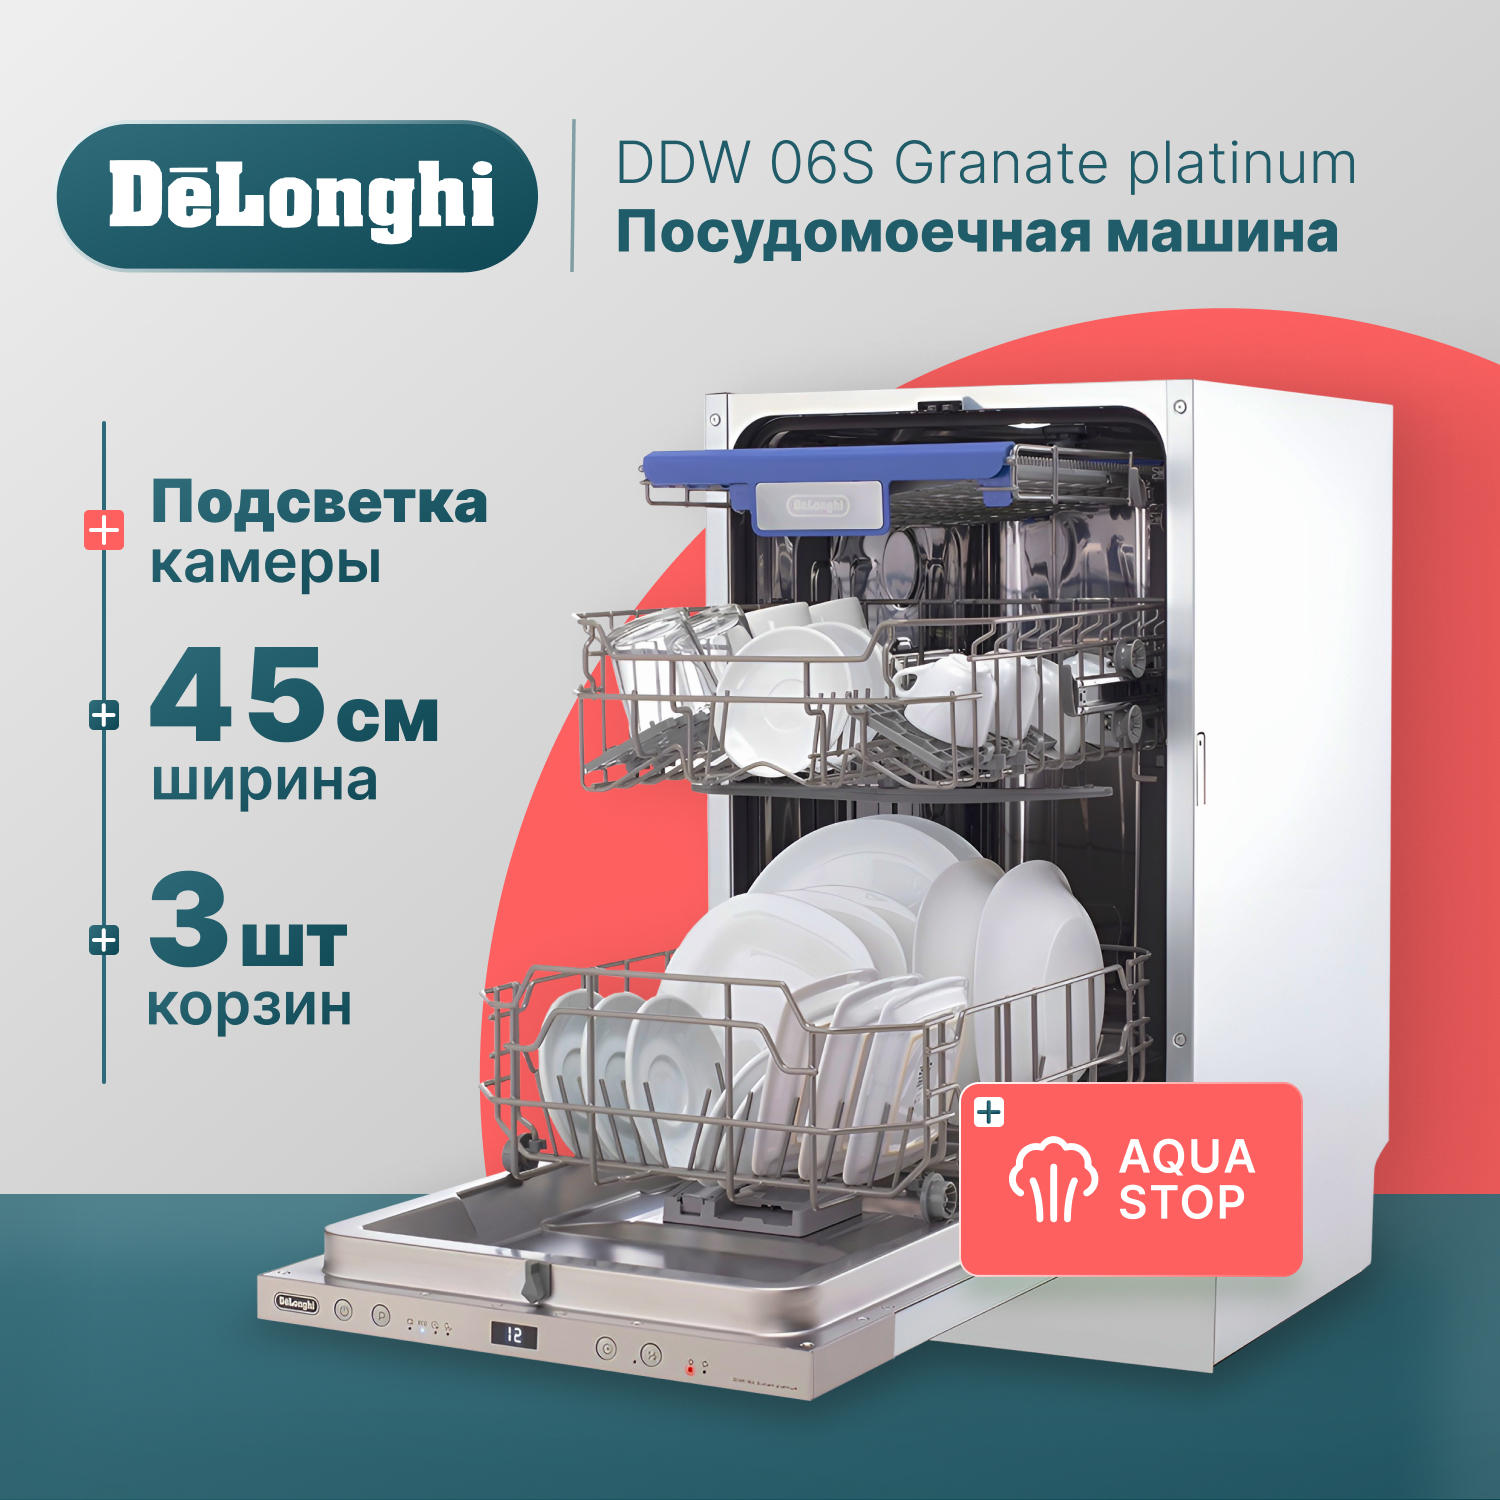 Встраиваемая посудомоечная машина Delonghi DDW06S Granate platinum встраиваемая посудомоечная машина delonghi ddw06s granate platinum